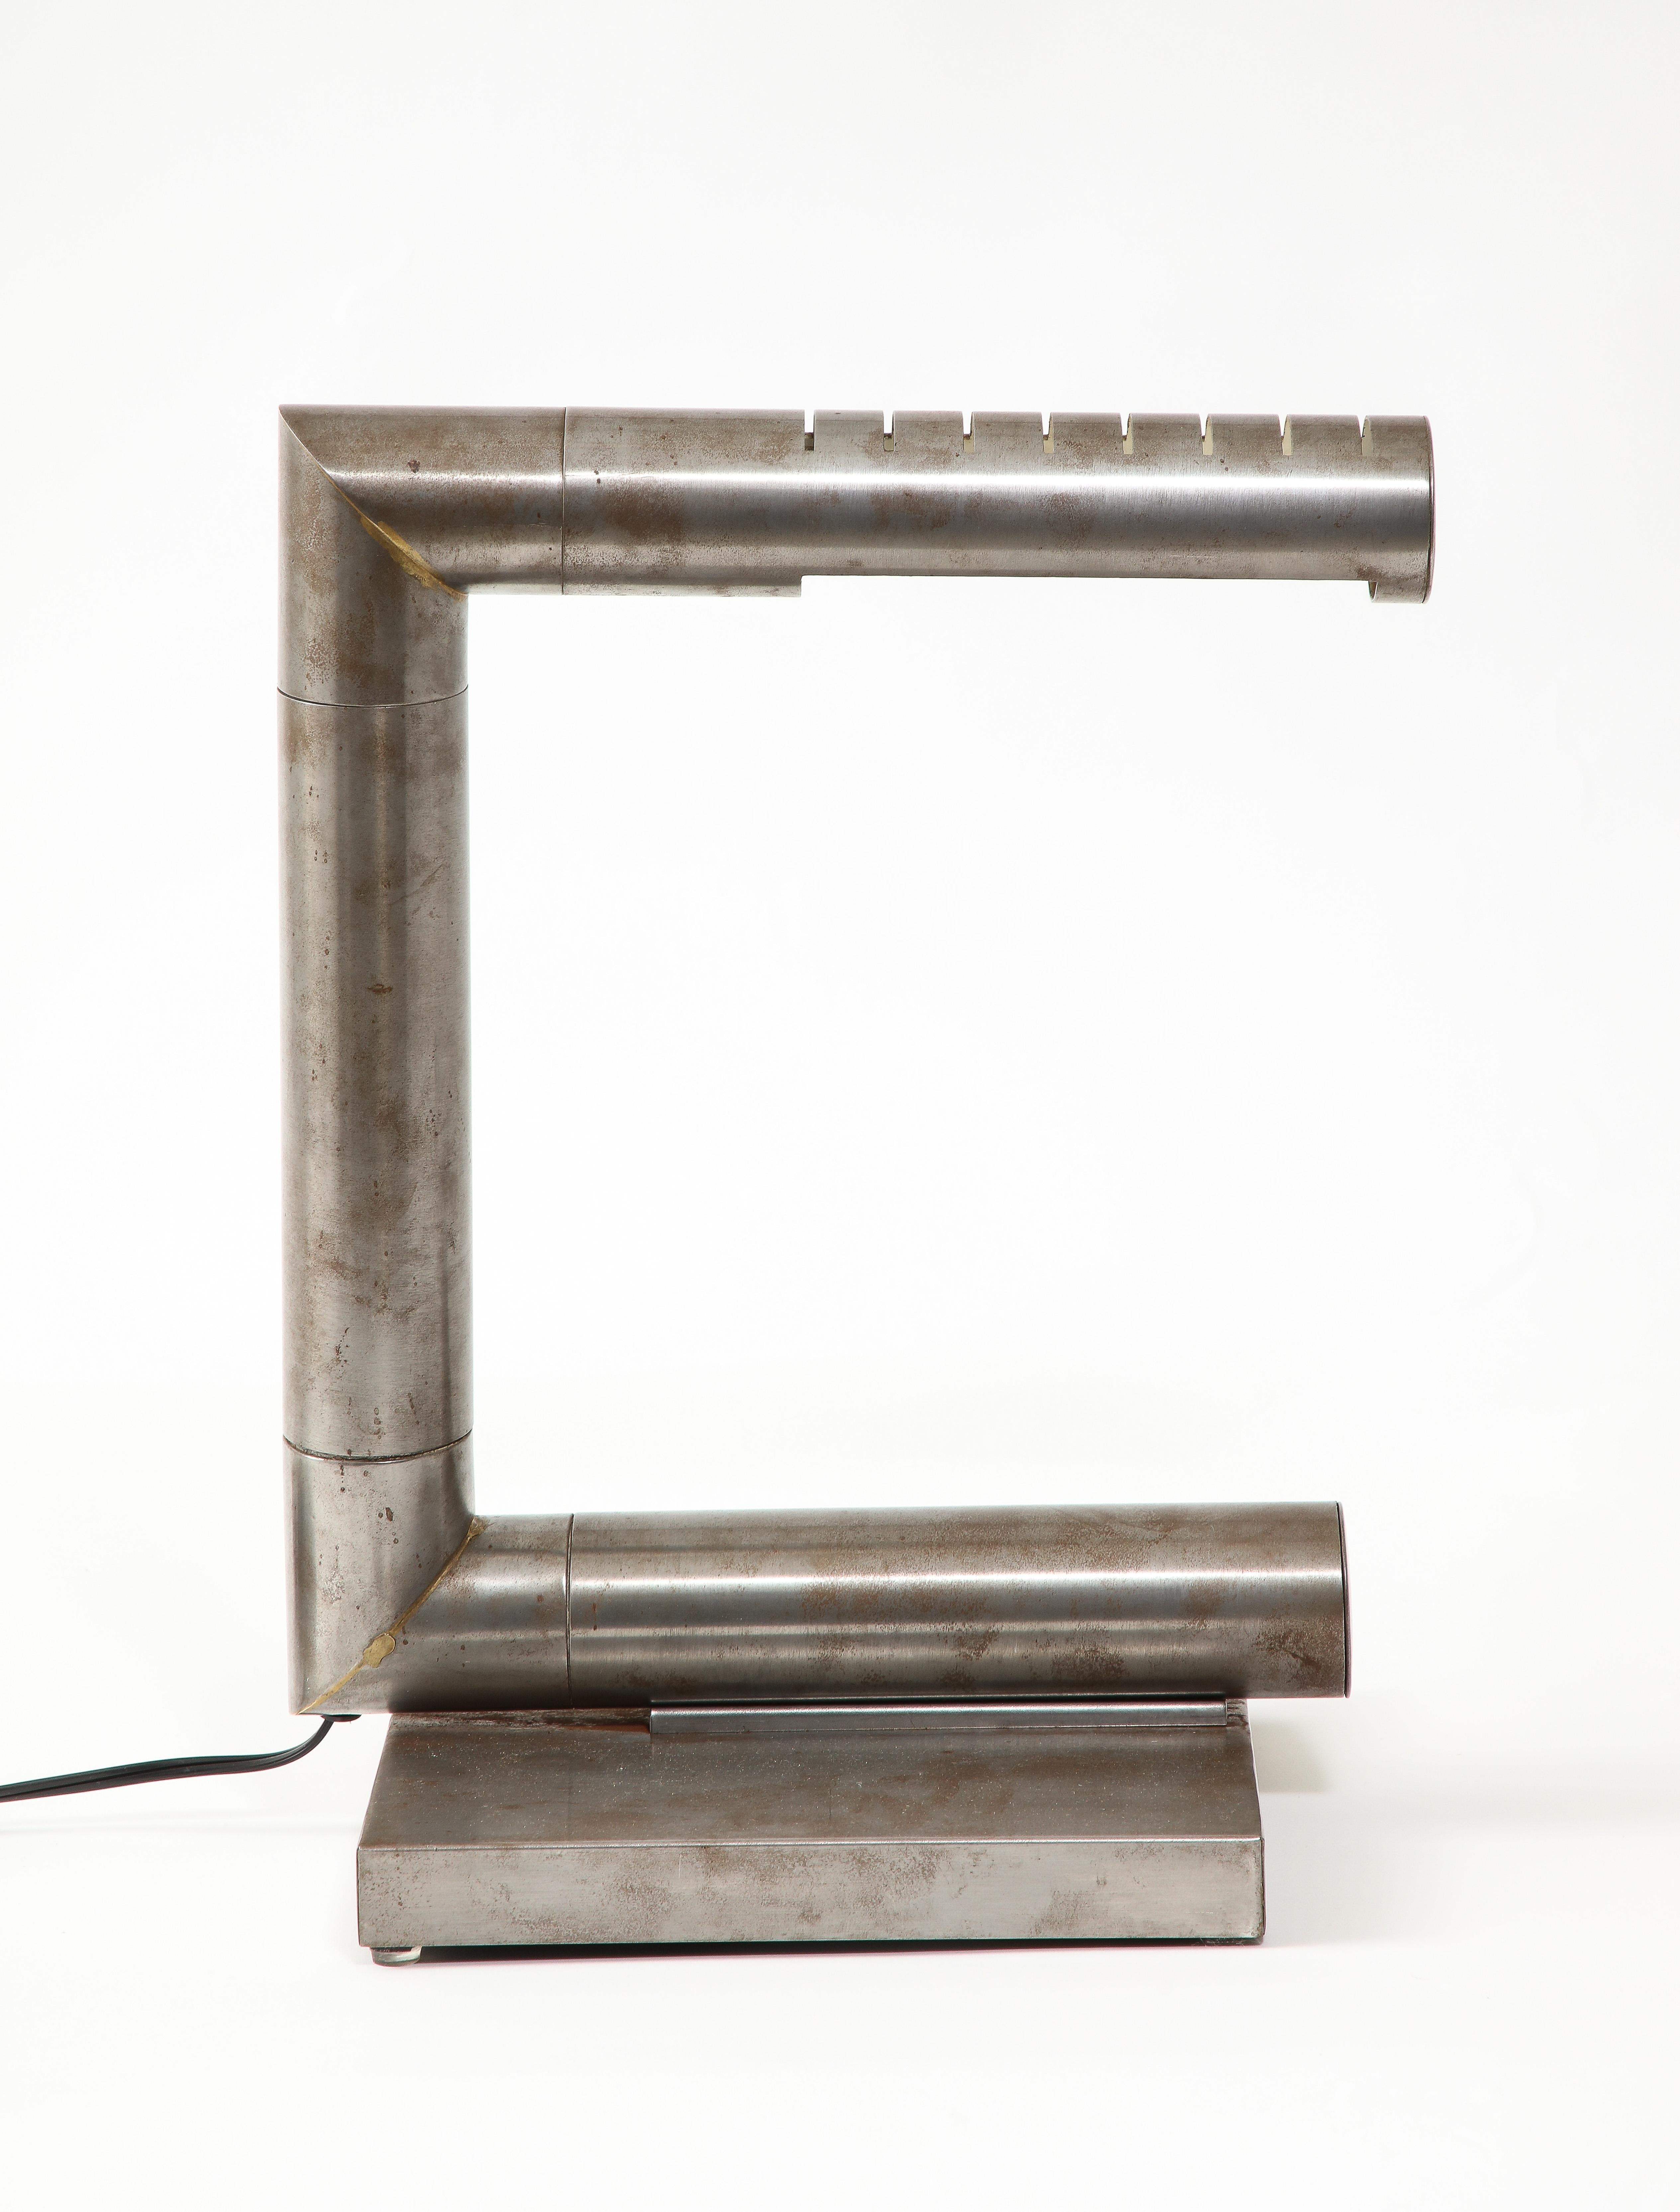 Schreibtischleuchte aus gebürstetem Stahl, in drei Richtungen verstellbar, mit quadratischem Sockel.
